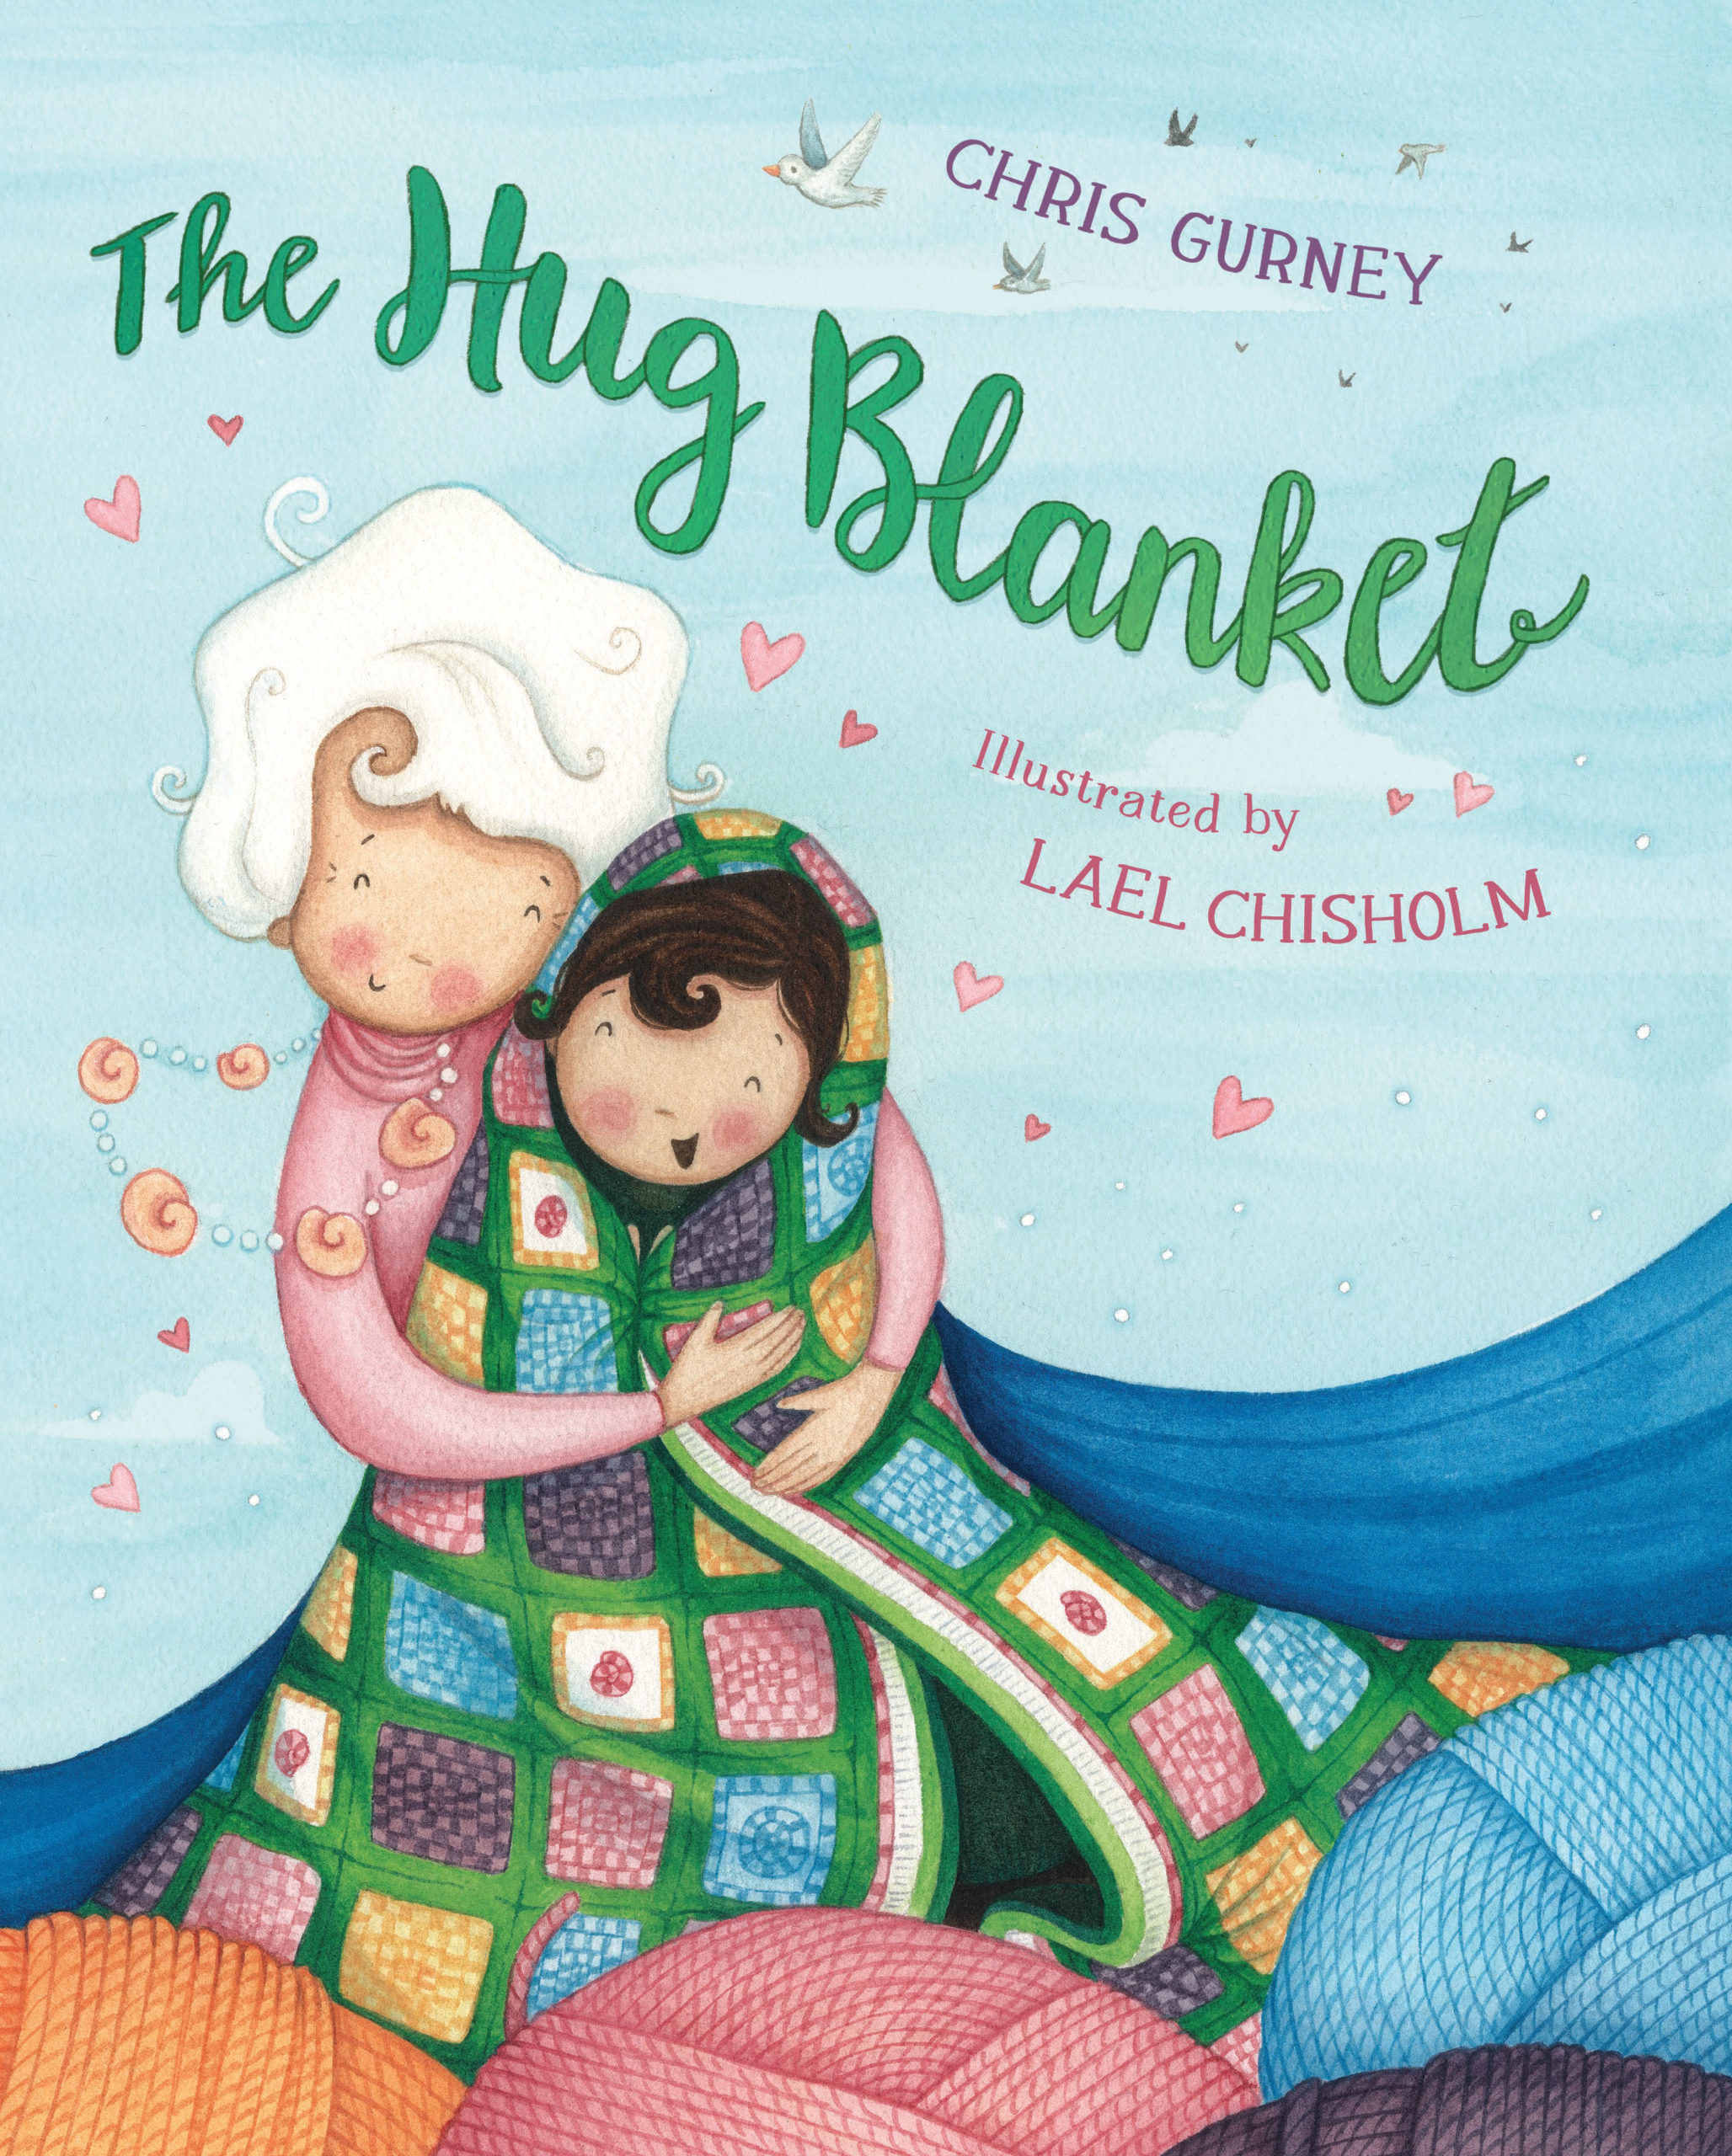 The Hug Blanket